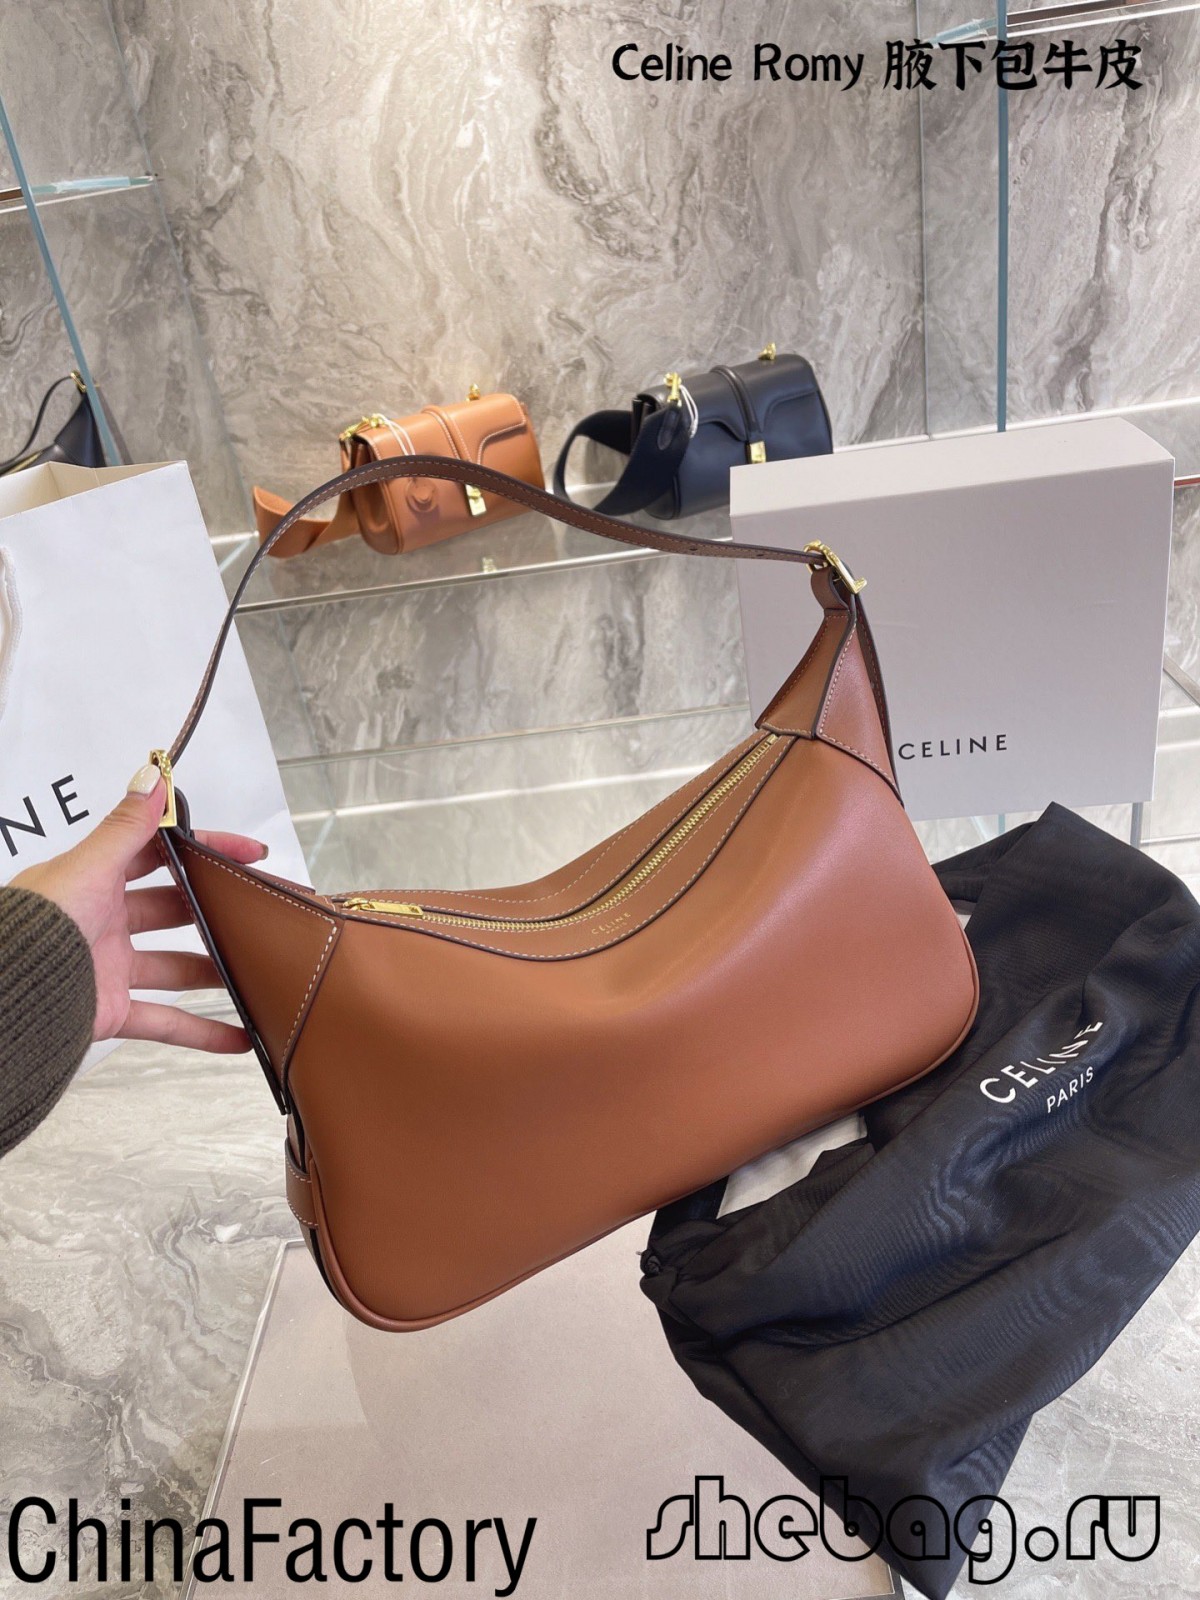 Відгуки про найкращі репліки сумок Celine: Celine Romy (видання 2022 року) - Інтернет-магазин підробленої сумки Louis Vuitton найкращої якості, копія дизайнерської сумки ru